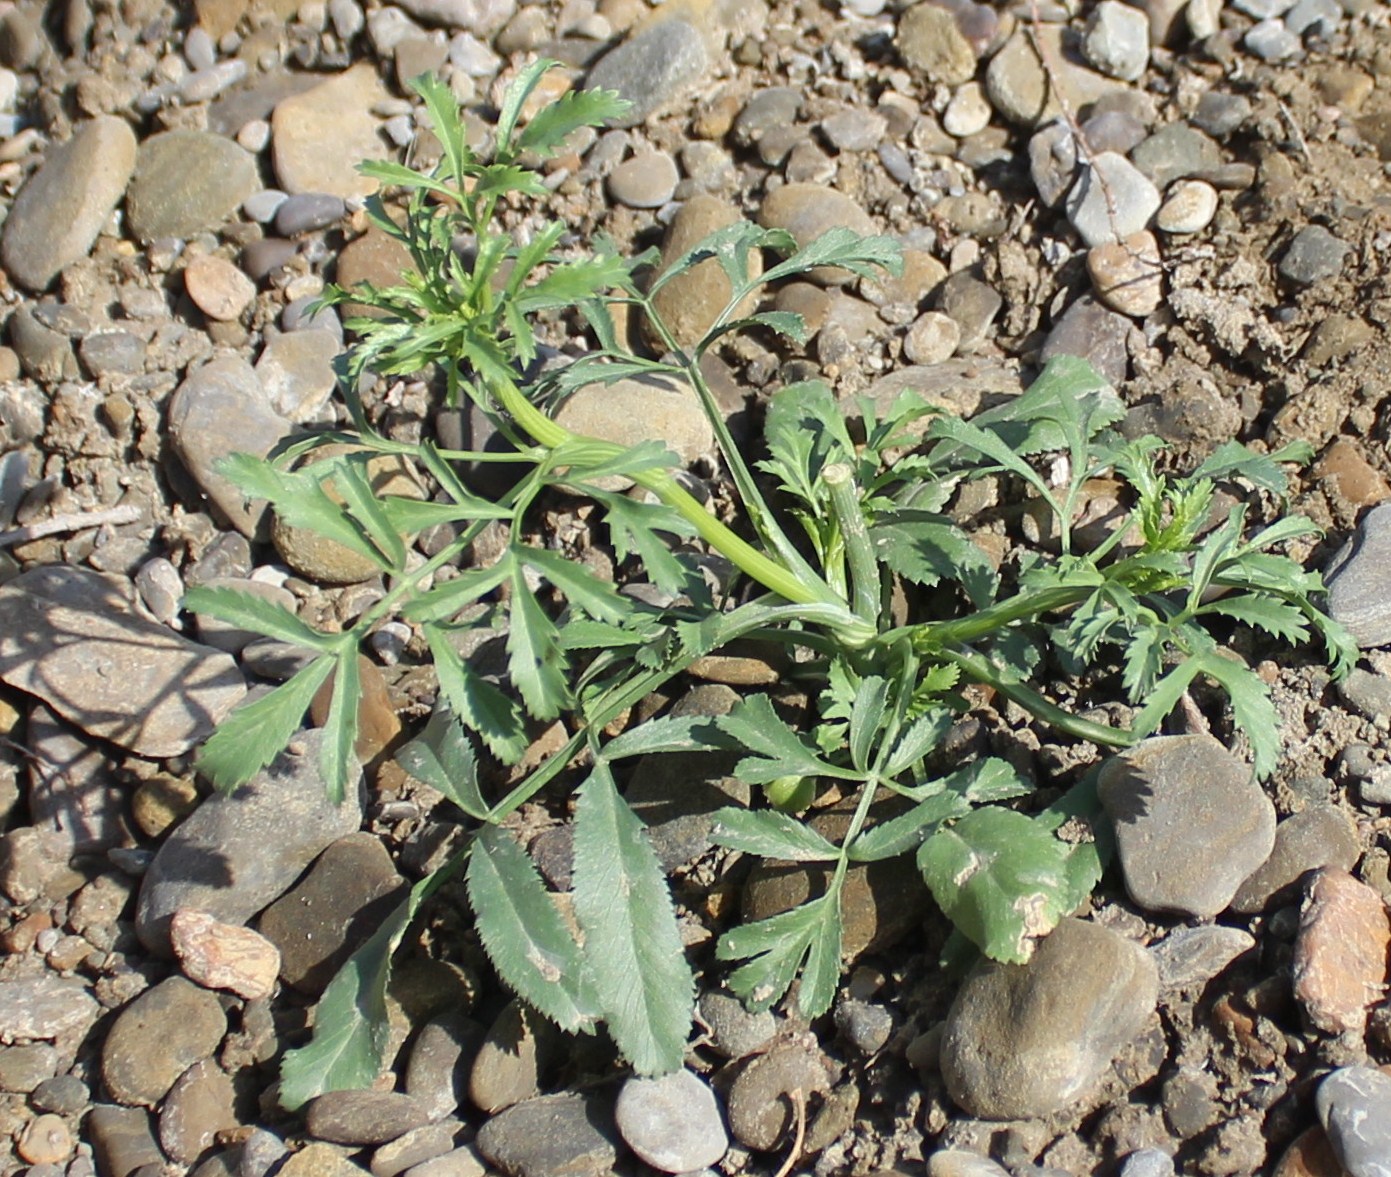 Image of familia Apiaceae specimen.